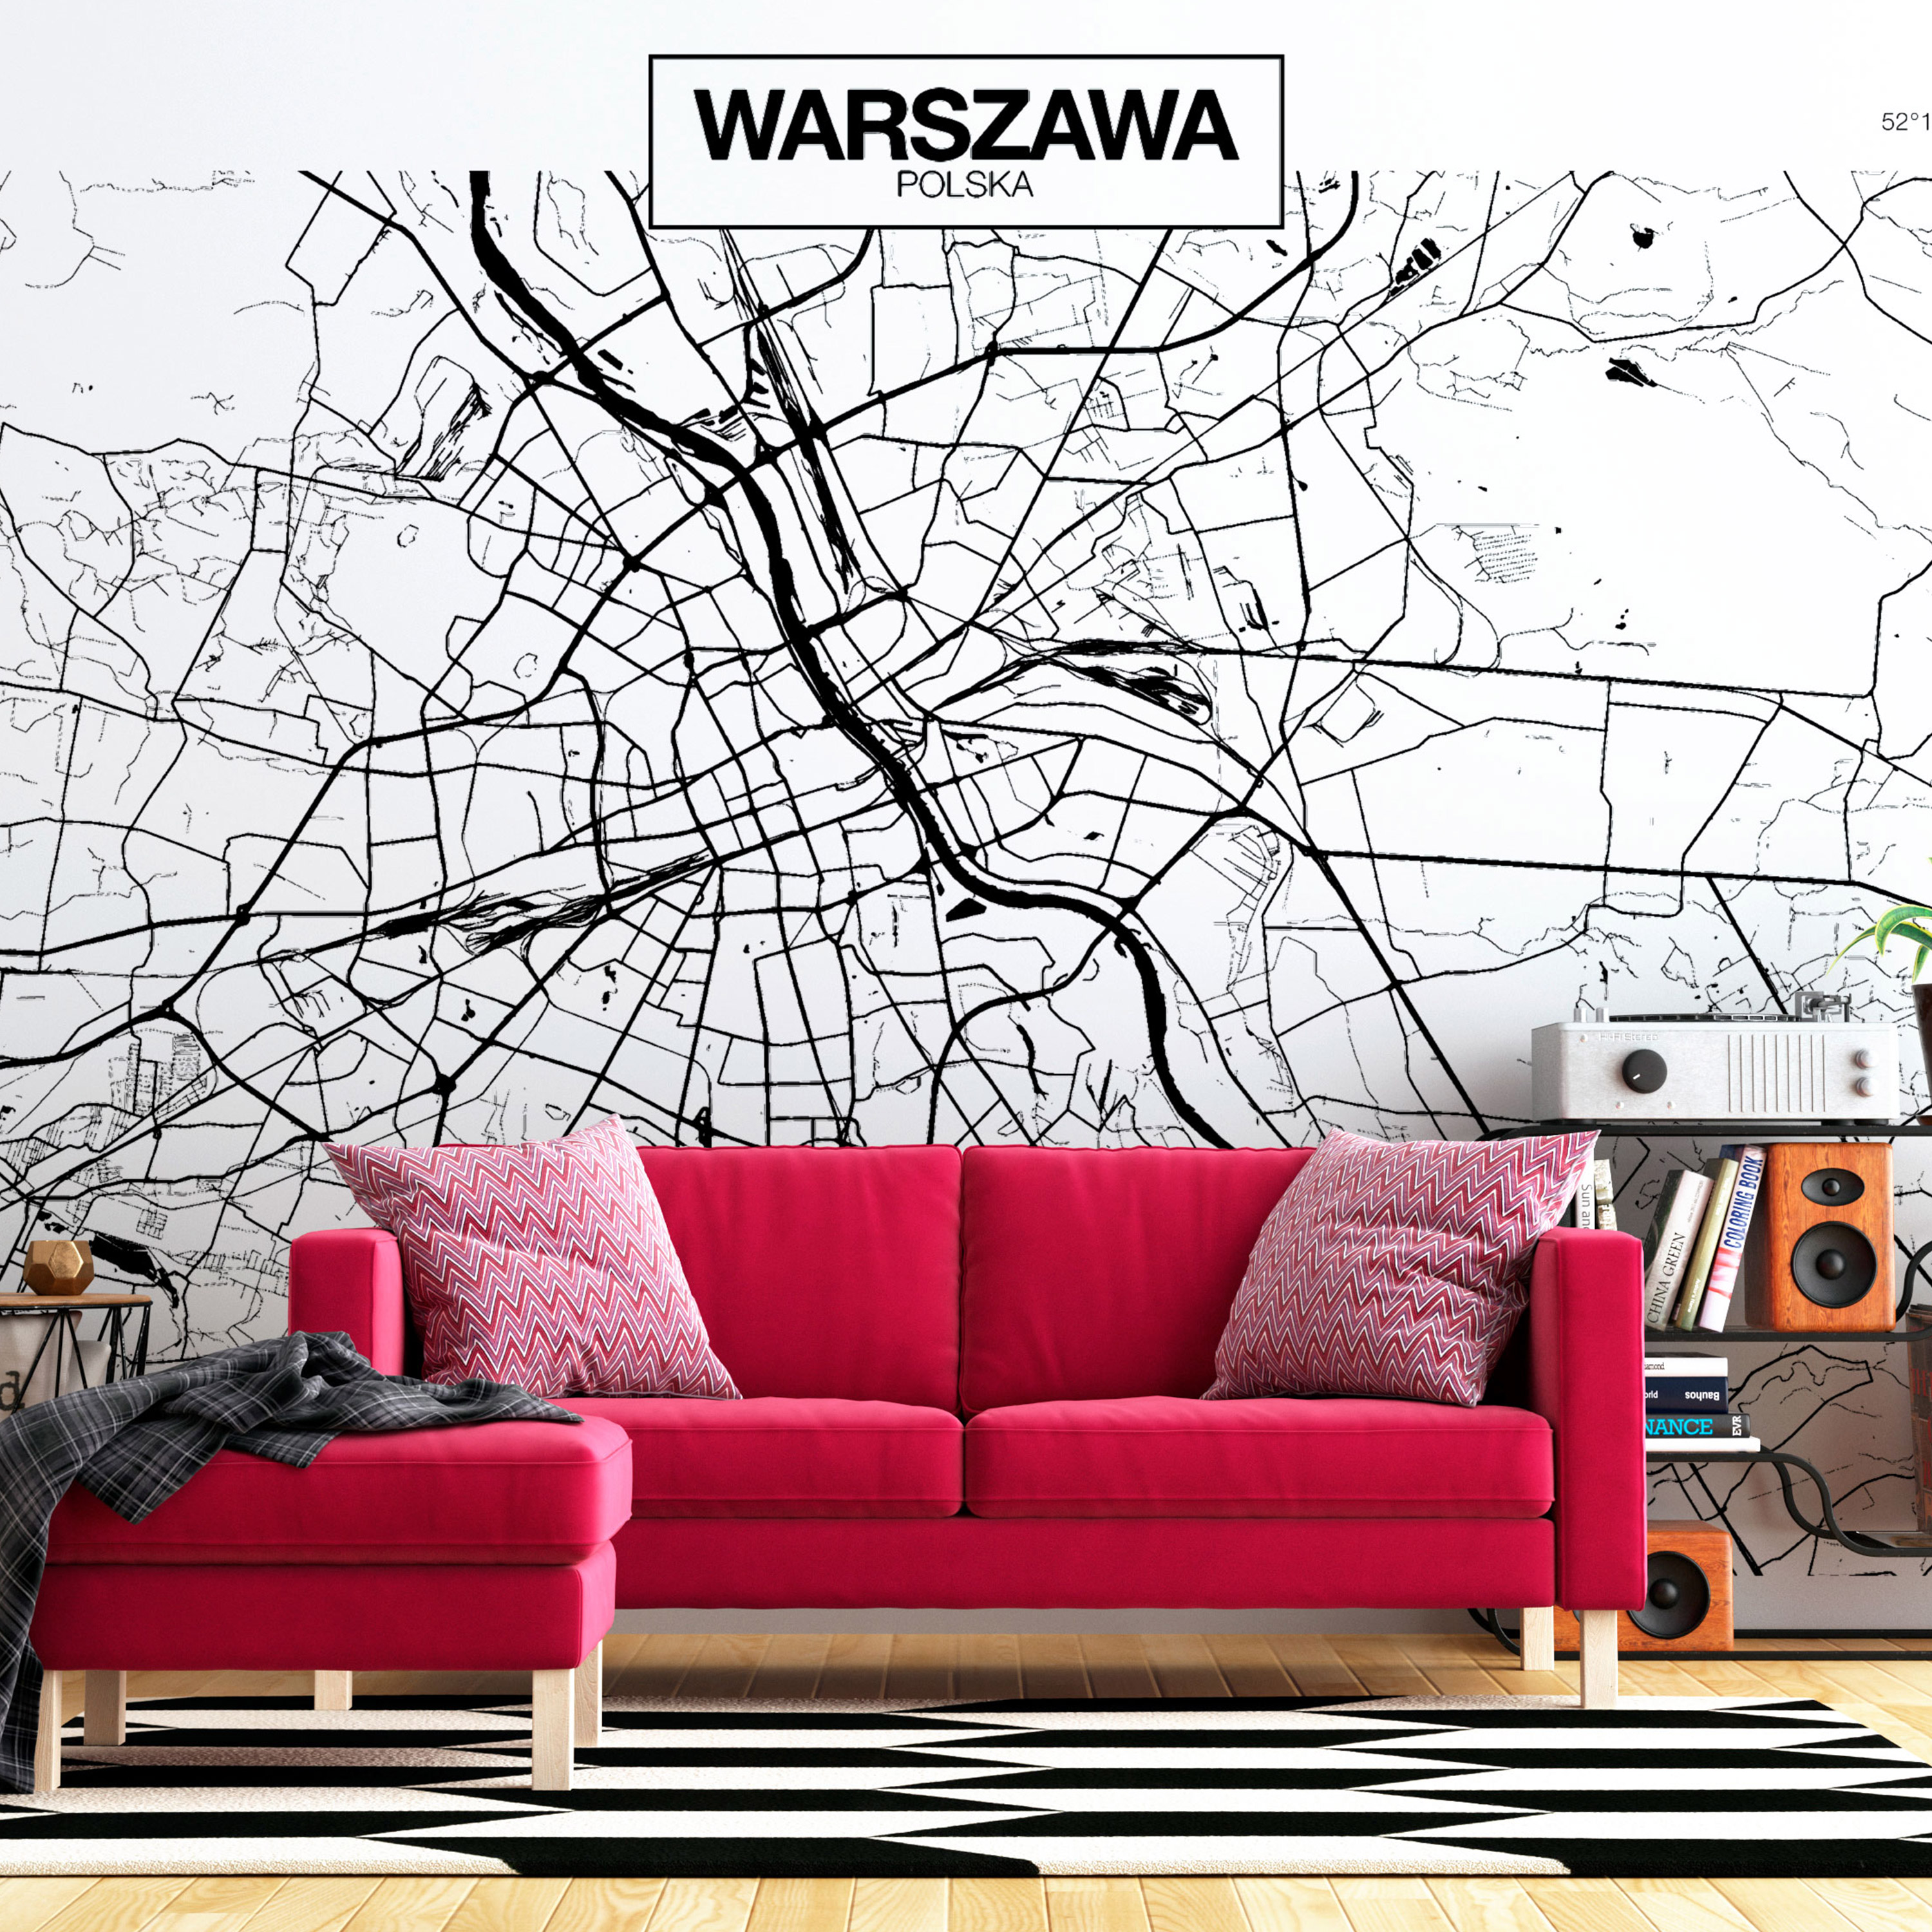 Wallpaper - Warsaw Map - 400x280